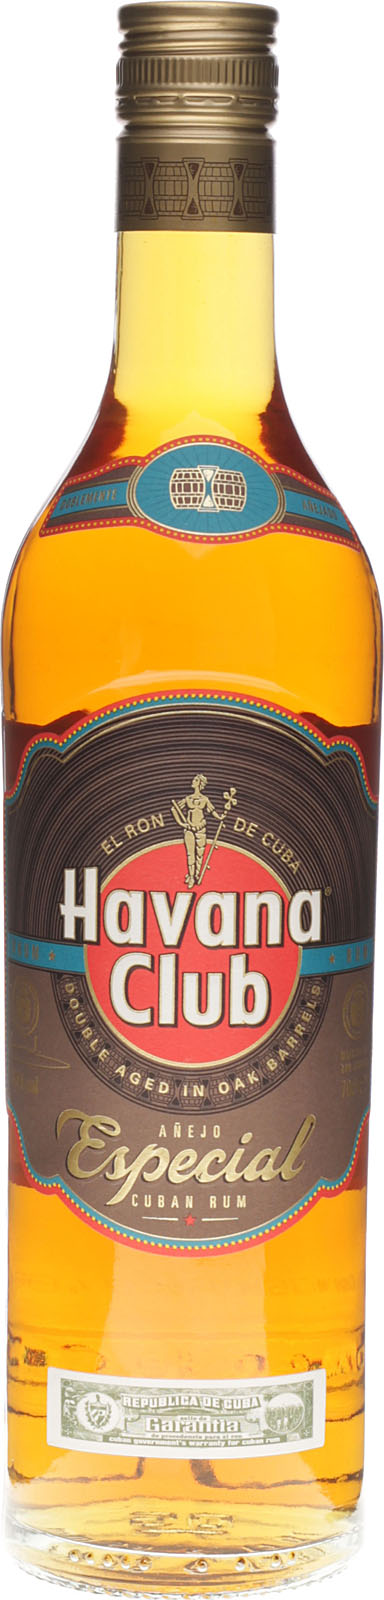 Havana Club Añejo Especial bei barfish.de kaufen